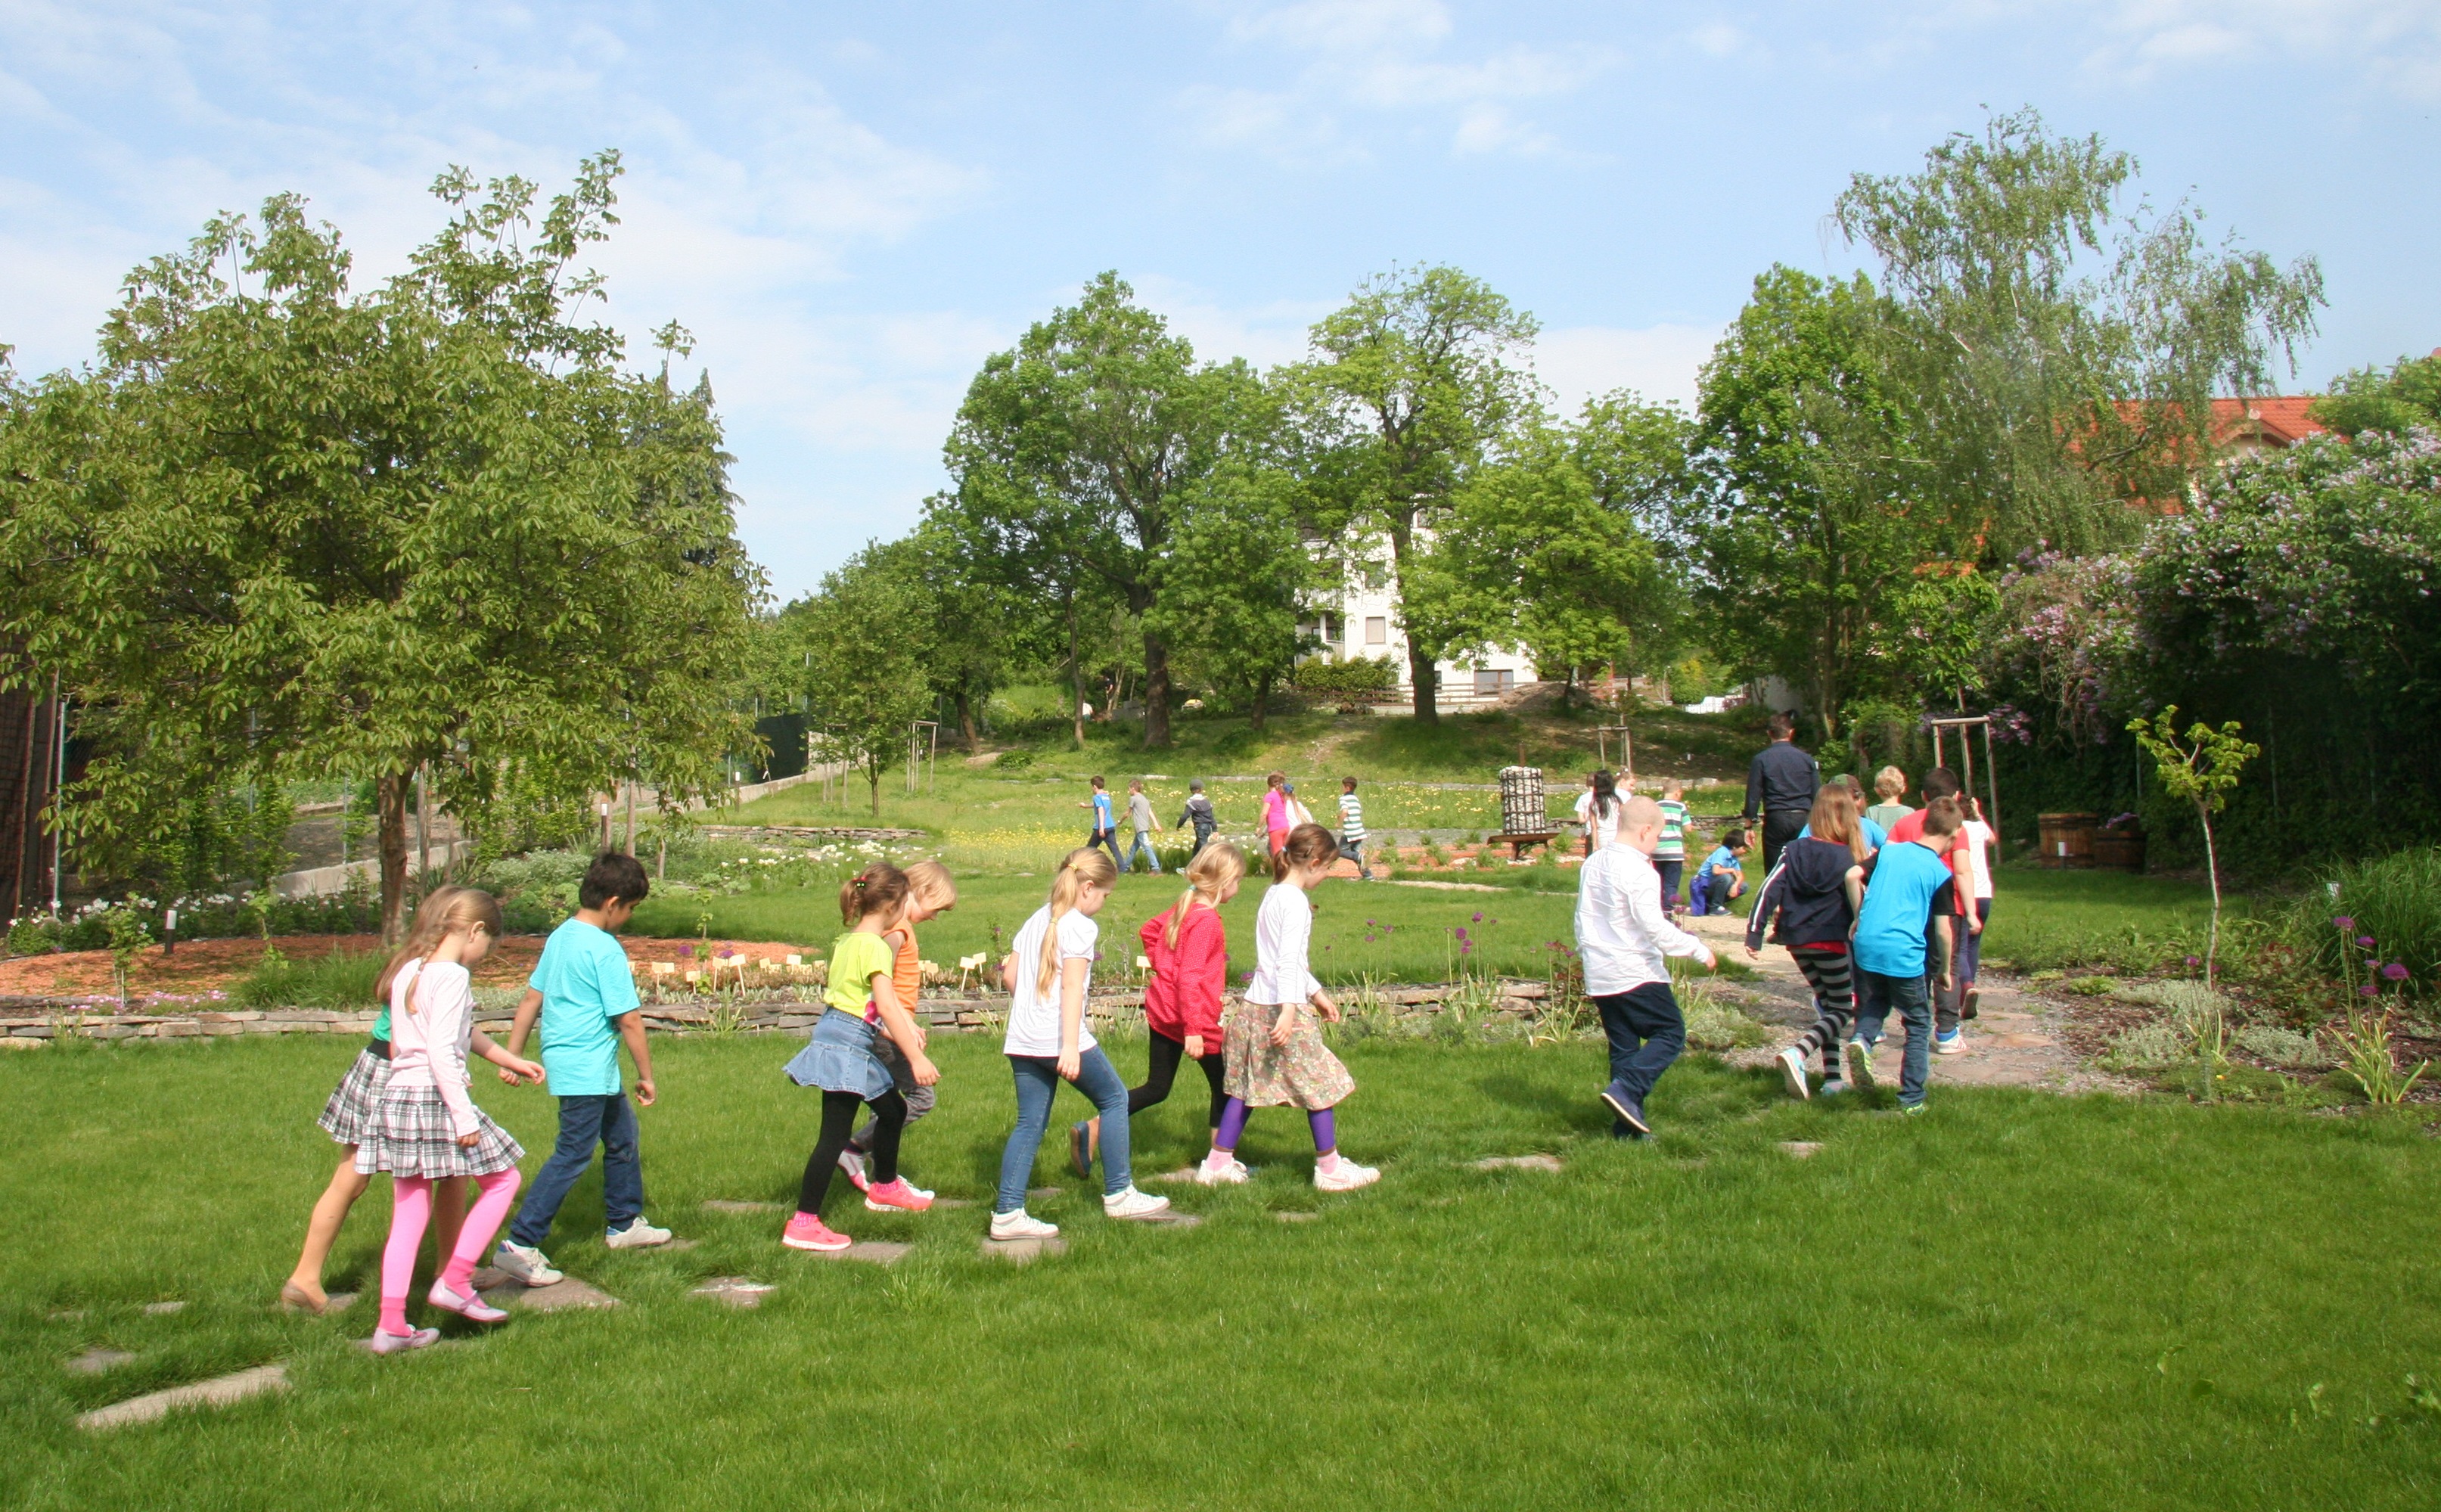 Obecná záhrada: Zážitková prírodoveda pre školákov a škôlkarov! 